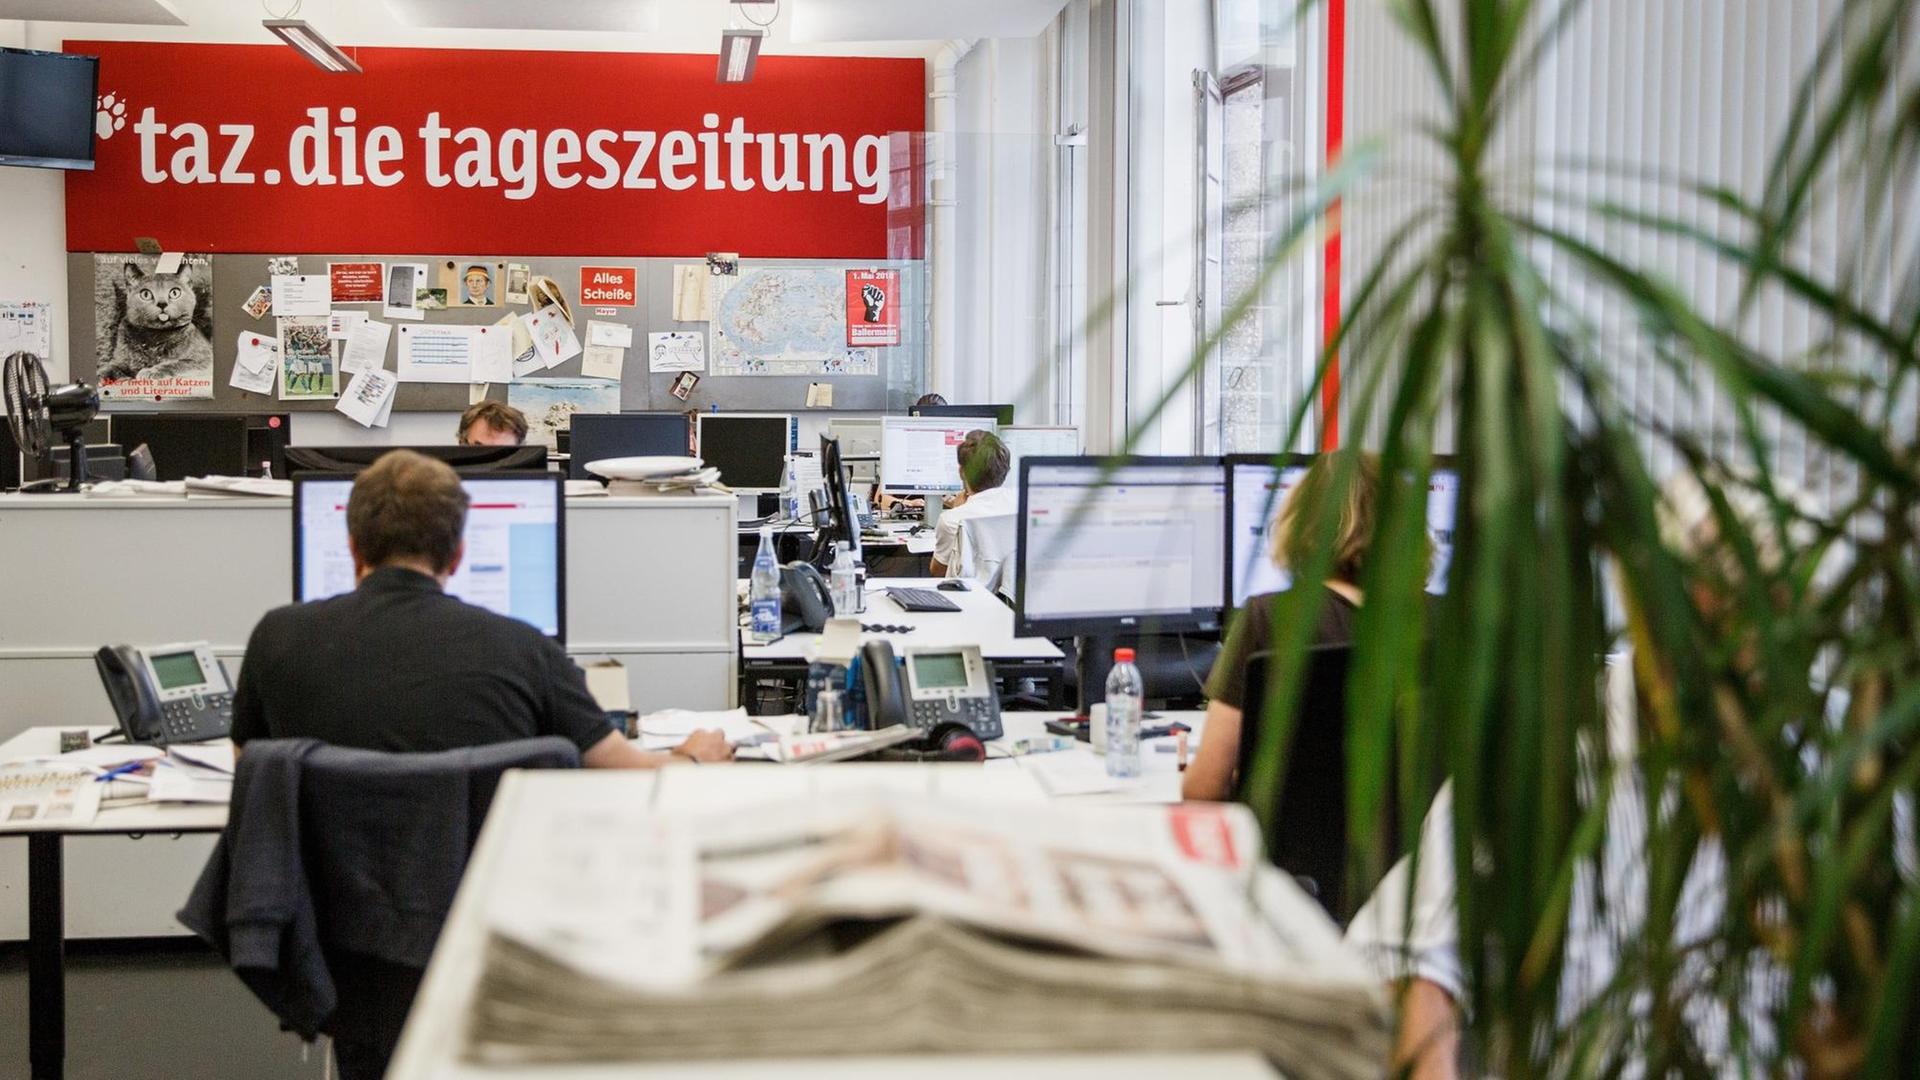 11.09.2018, Berlin: Redaktionsraum der taz - die tageszeitung. Die Tageszeitung ist eine überregionale deutsche Tageszeitung. Sie wurde 1978 als alternatives, selbstverwaltetes Zeitungsprojekt gegründet.